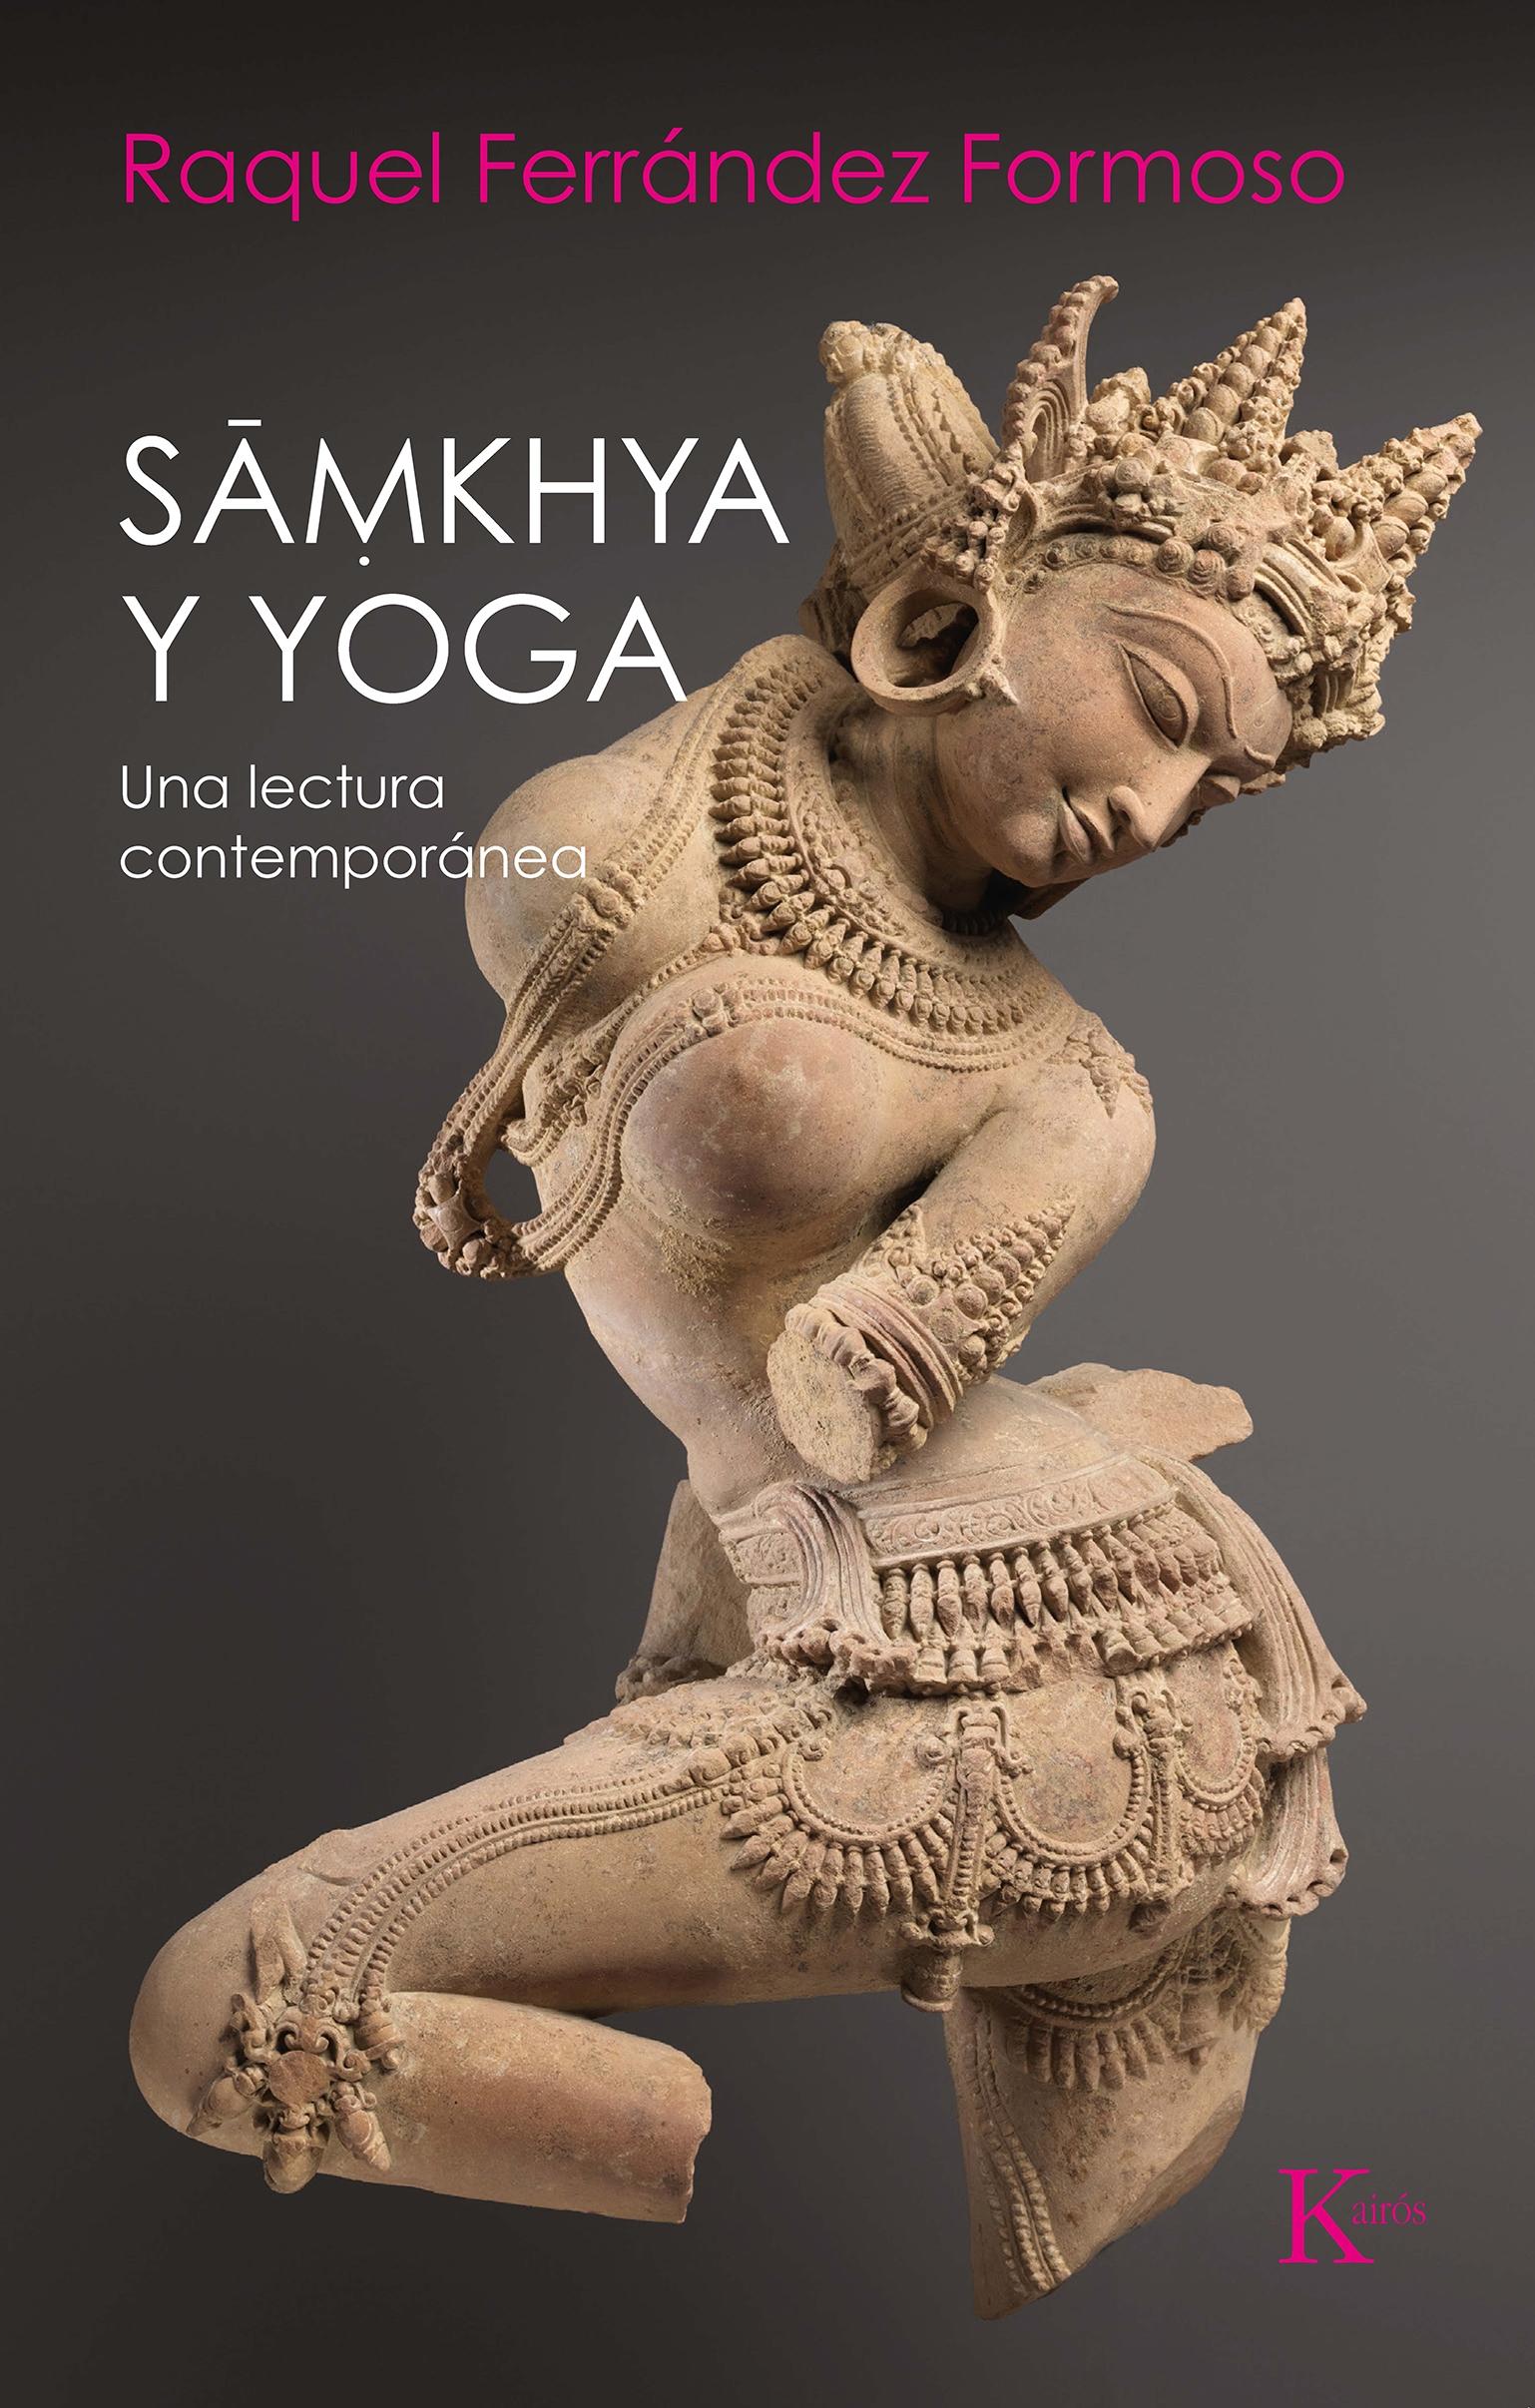 Samkhya y Yoga "Una Lectura Contemporanea"